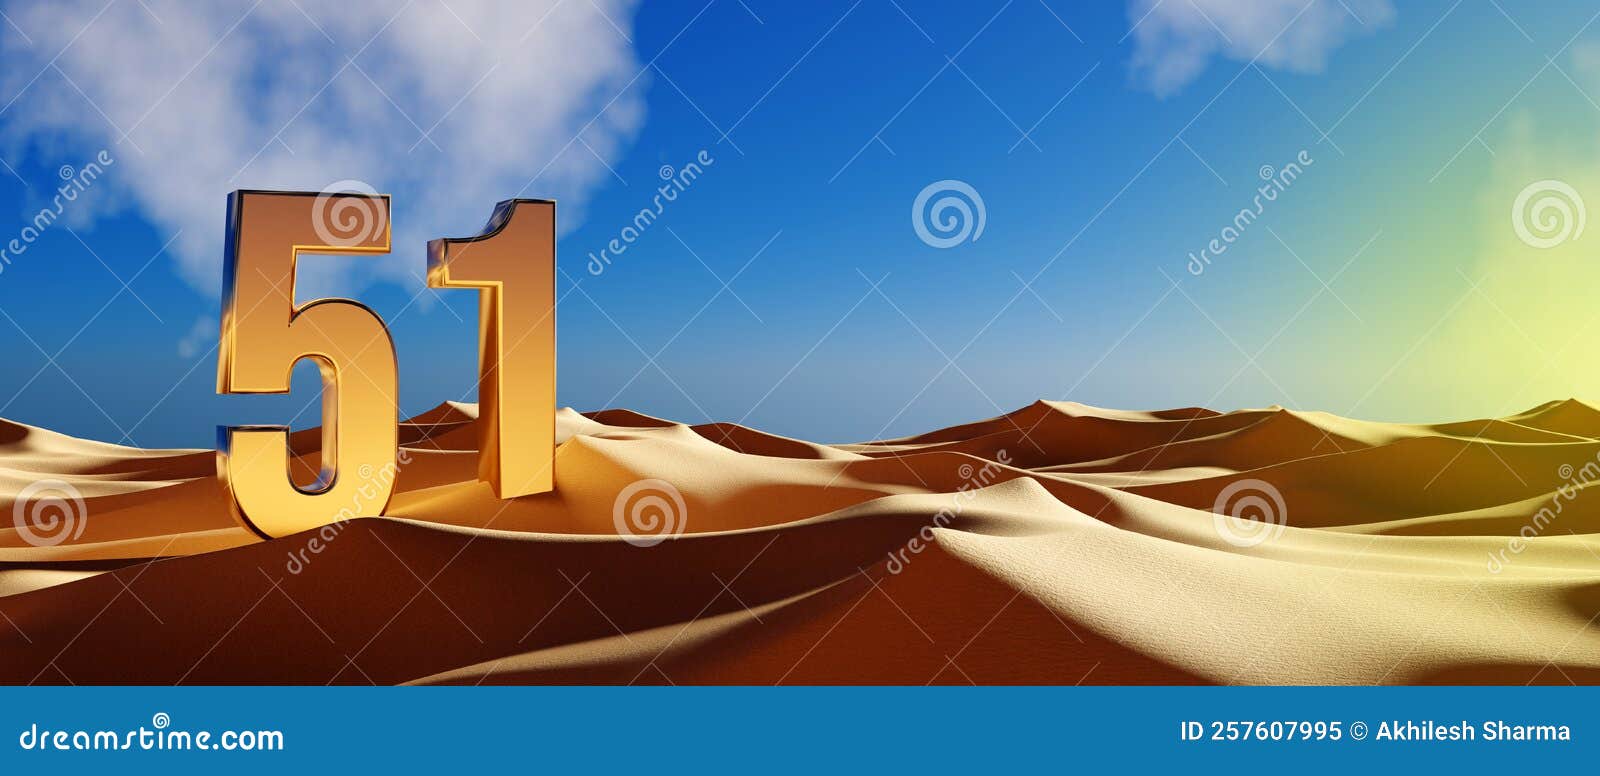 uae`s 51 national day celebration - golden 51 in desert sand - 3d 